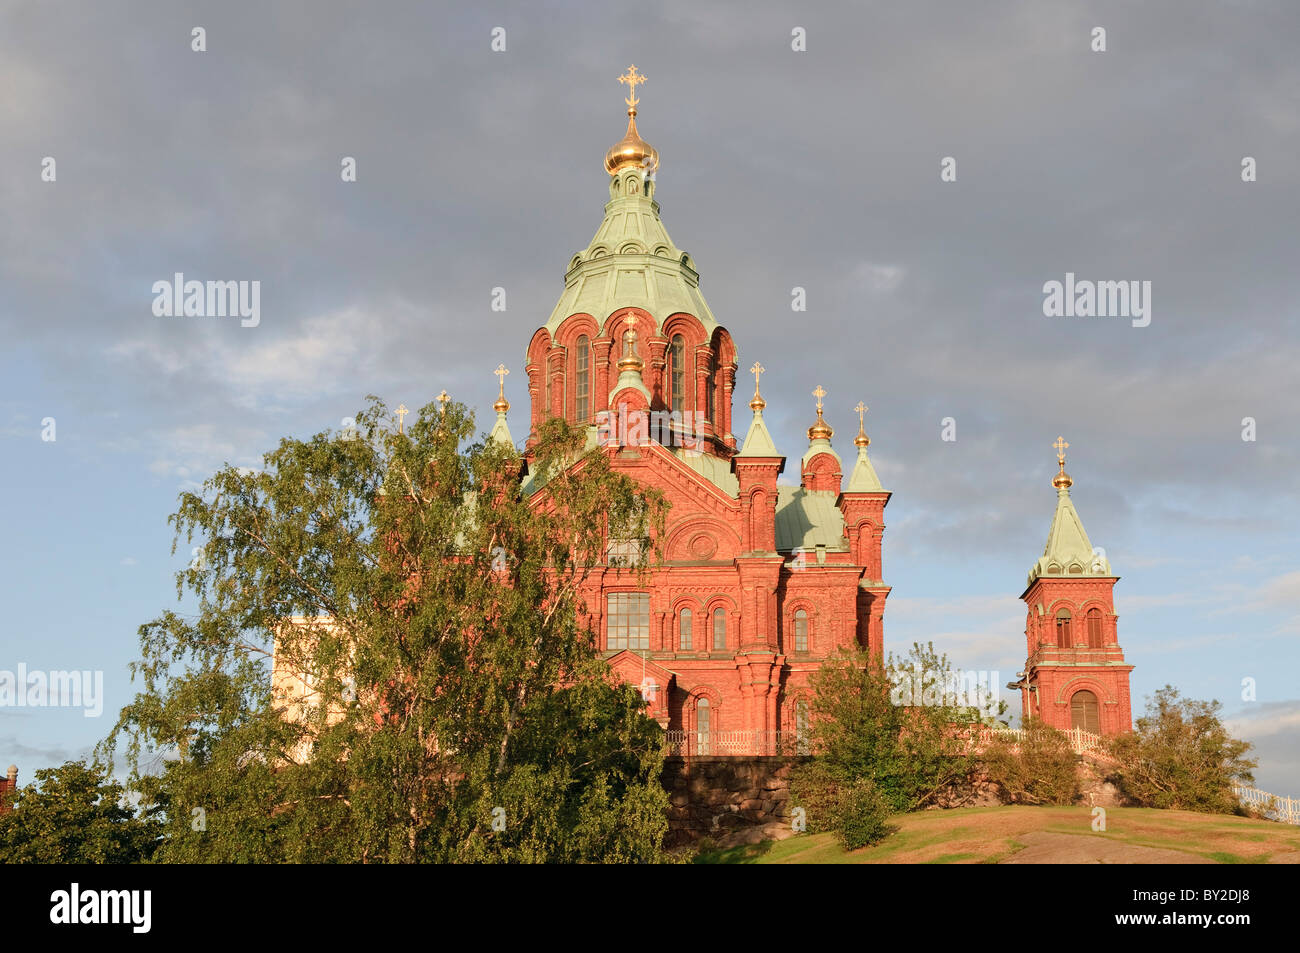 Construit en brique rouge de l'Eglise orthodoxe russe La cathédrale Uspenski à Helsinki, en Finlande. Banque D'Images